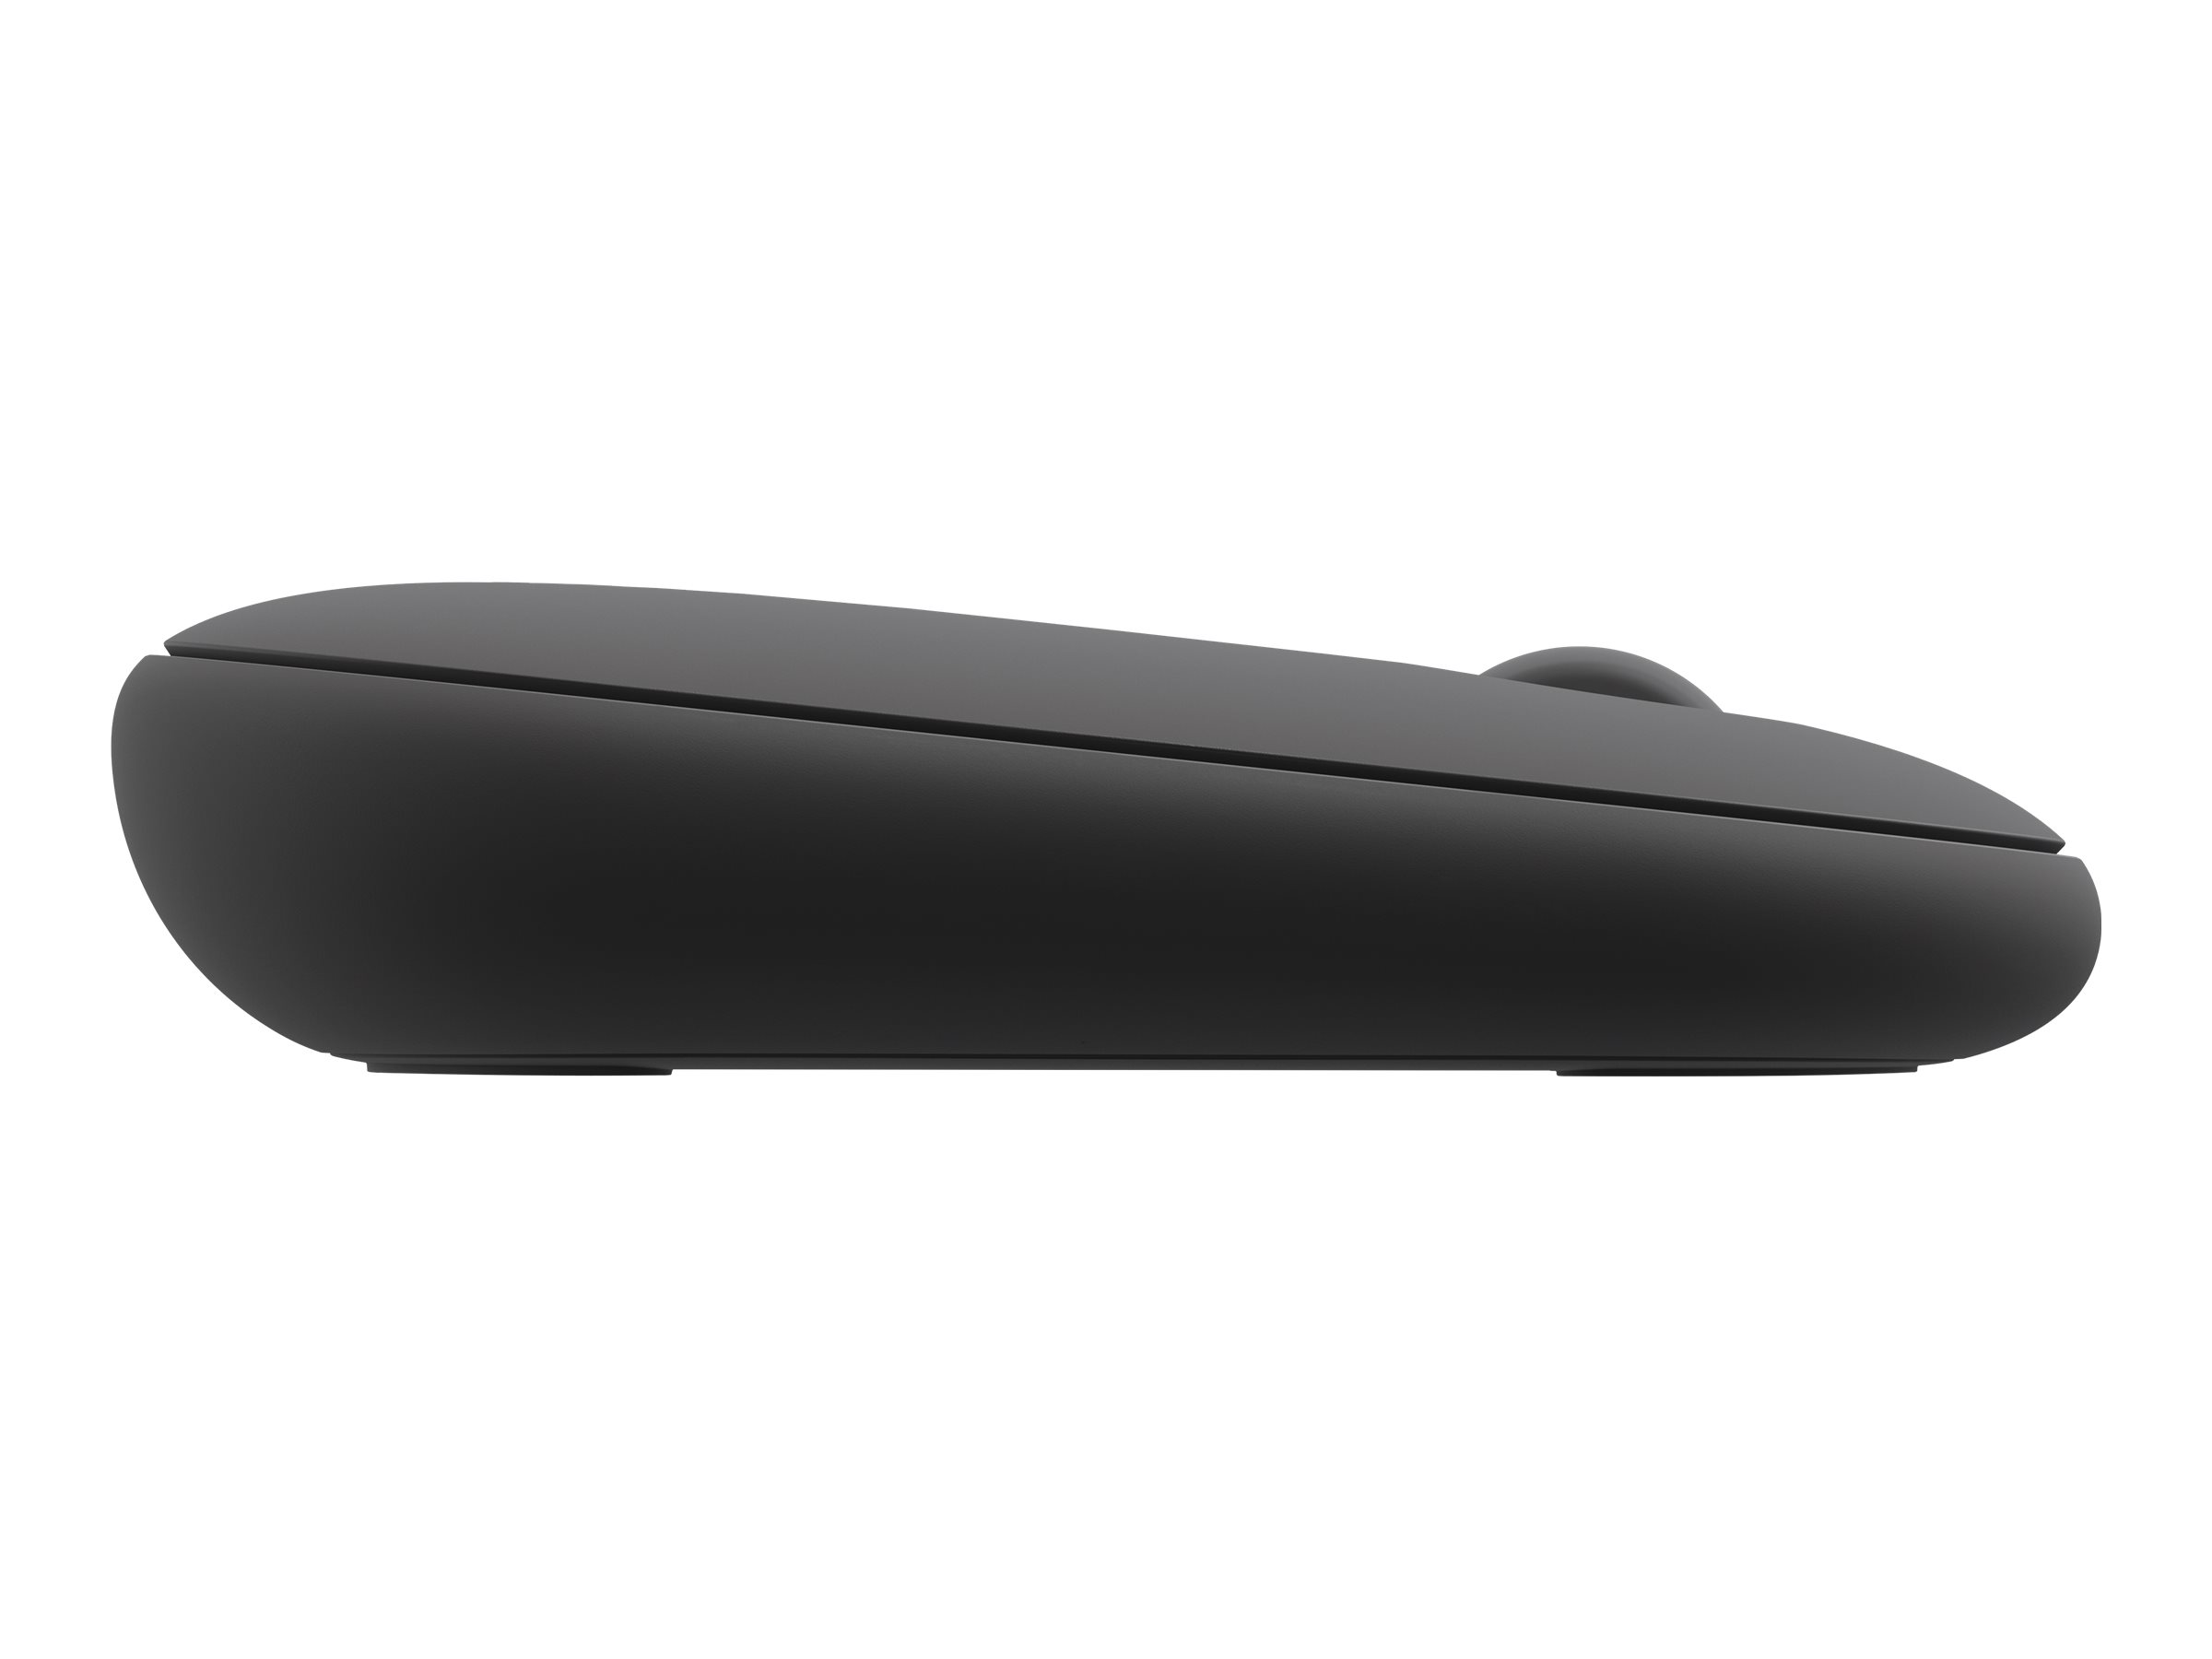 Souris Pebble Mouse 2 M350s - Bluetooth, ultra-fine et portable